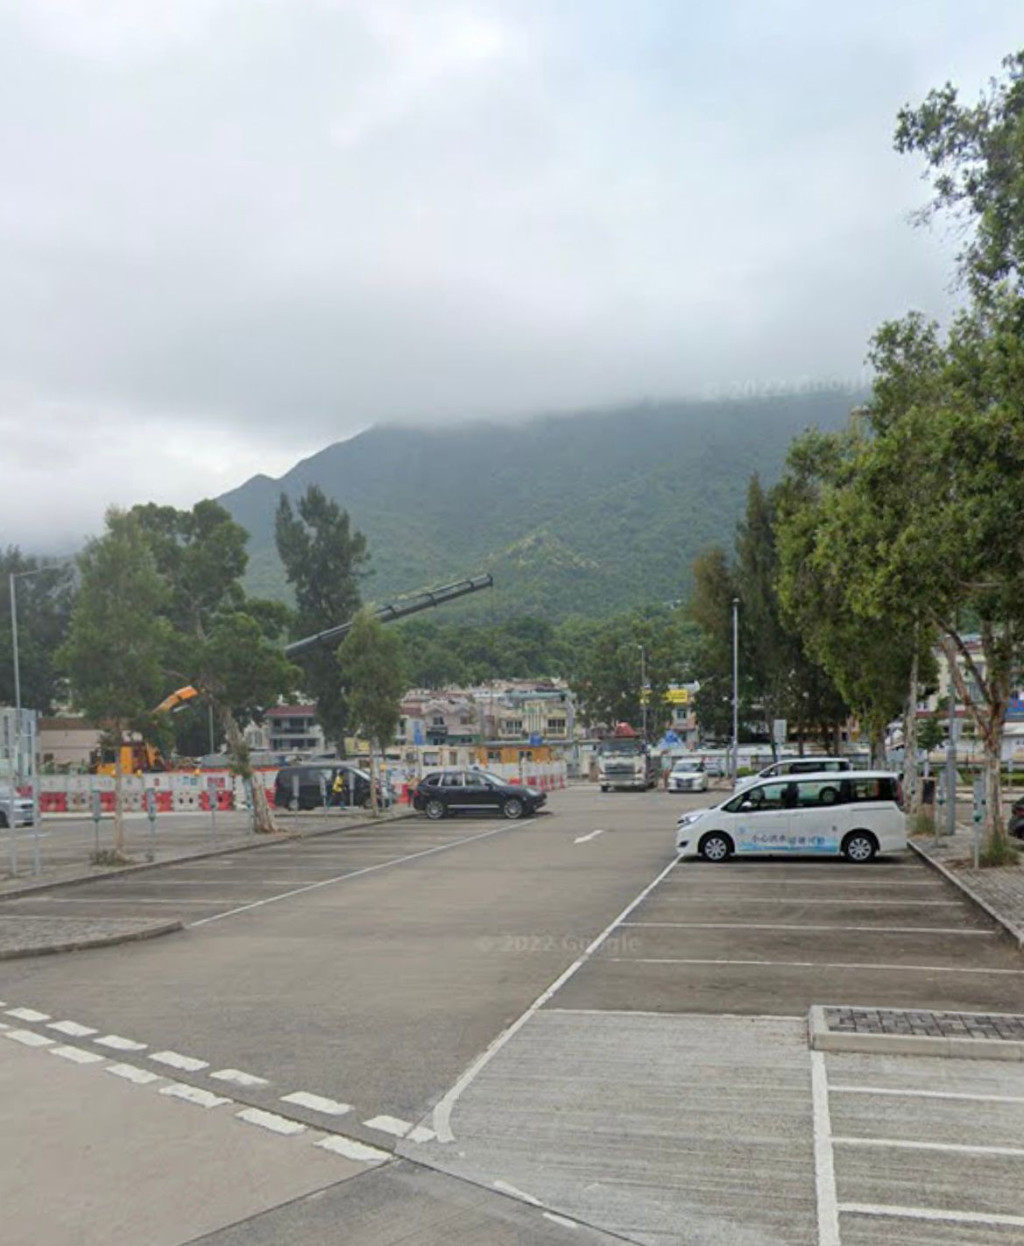 大尾篤郊野公園附近有超大型露天停車場，有近百個泊車位。